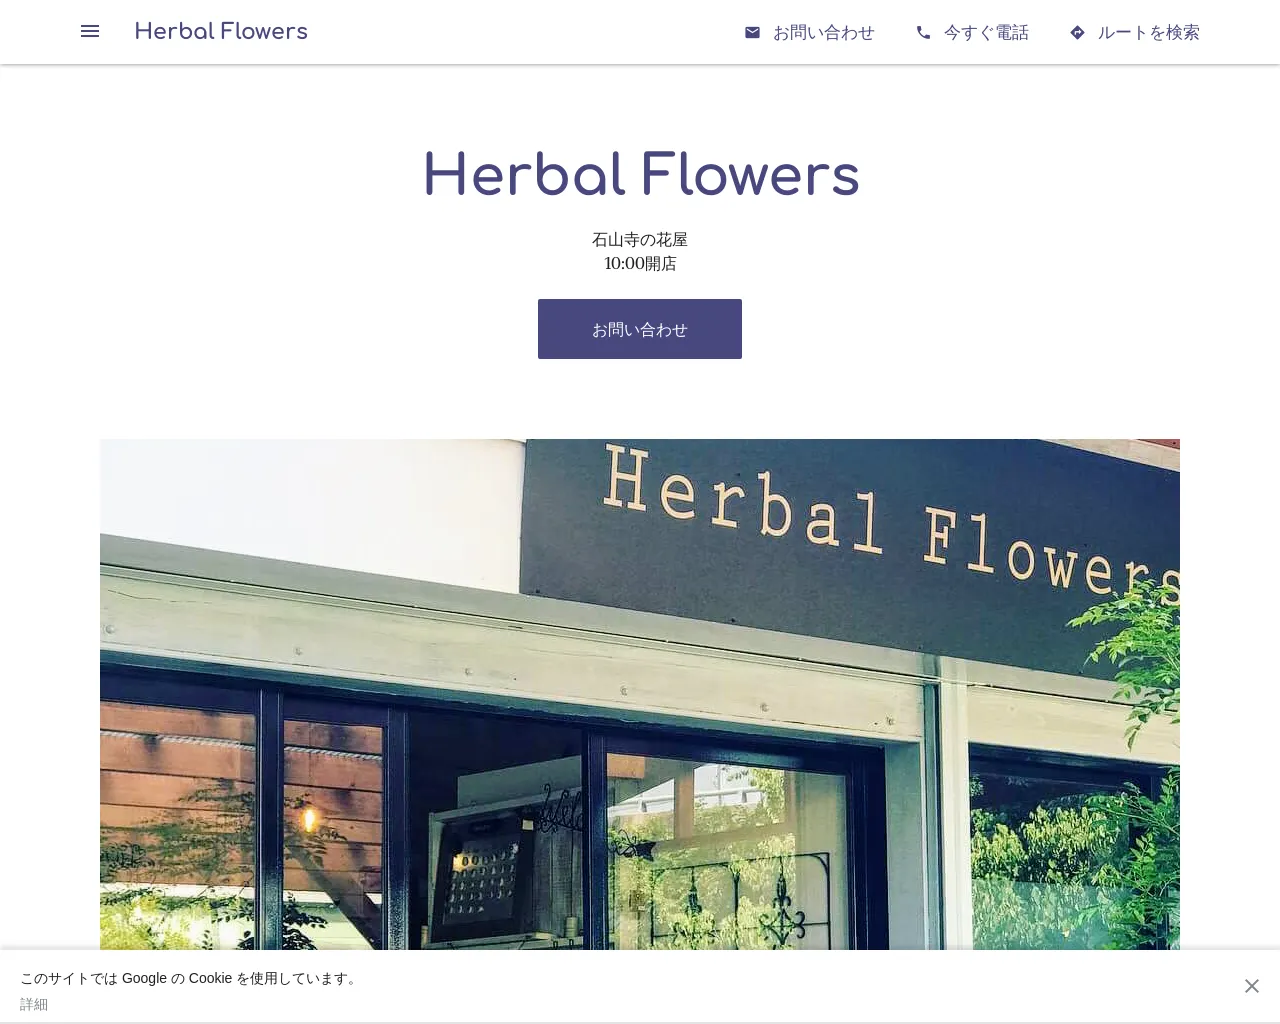 Herbal Flowers site